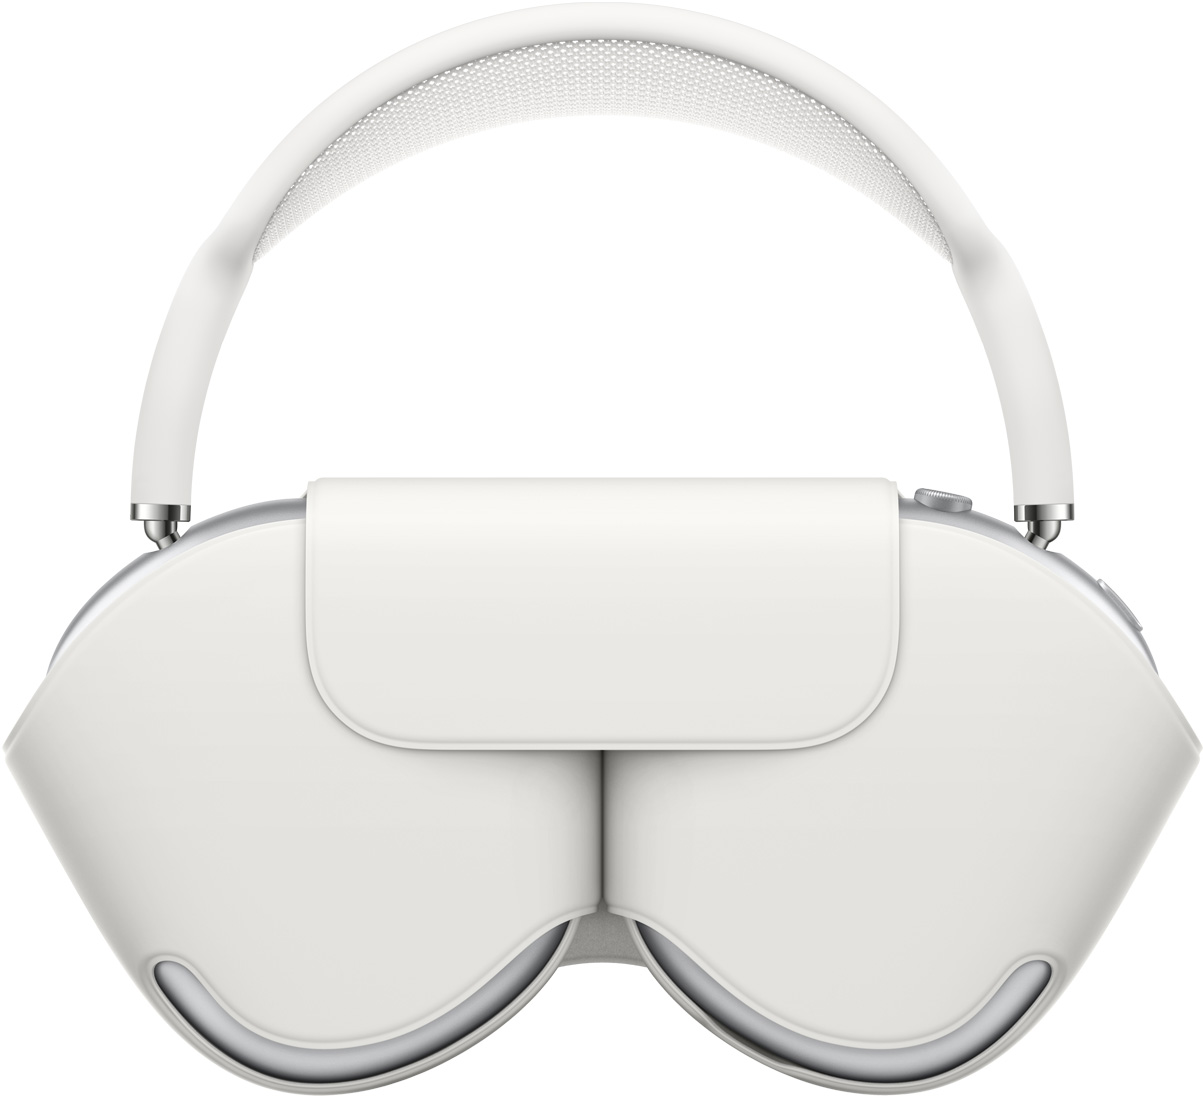 銀色 AirPods Max 搭配相襯的白色聰穎耳機套來保護耳罩，耳機放入時，頂部網面會在上方露出。